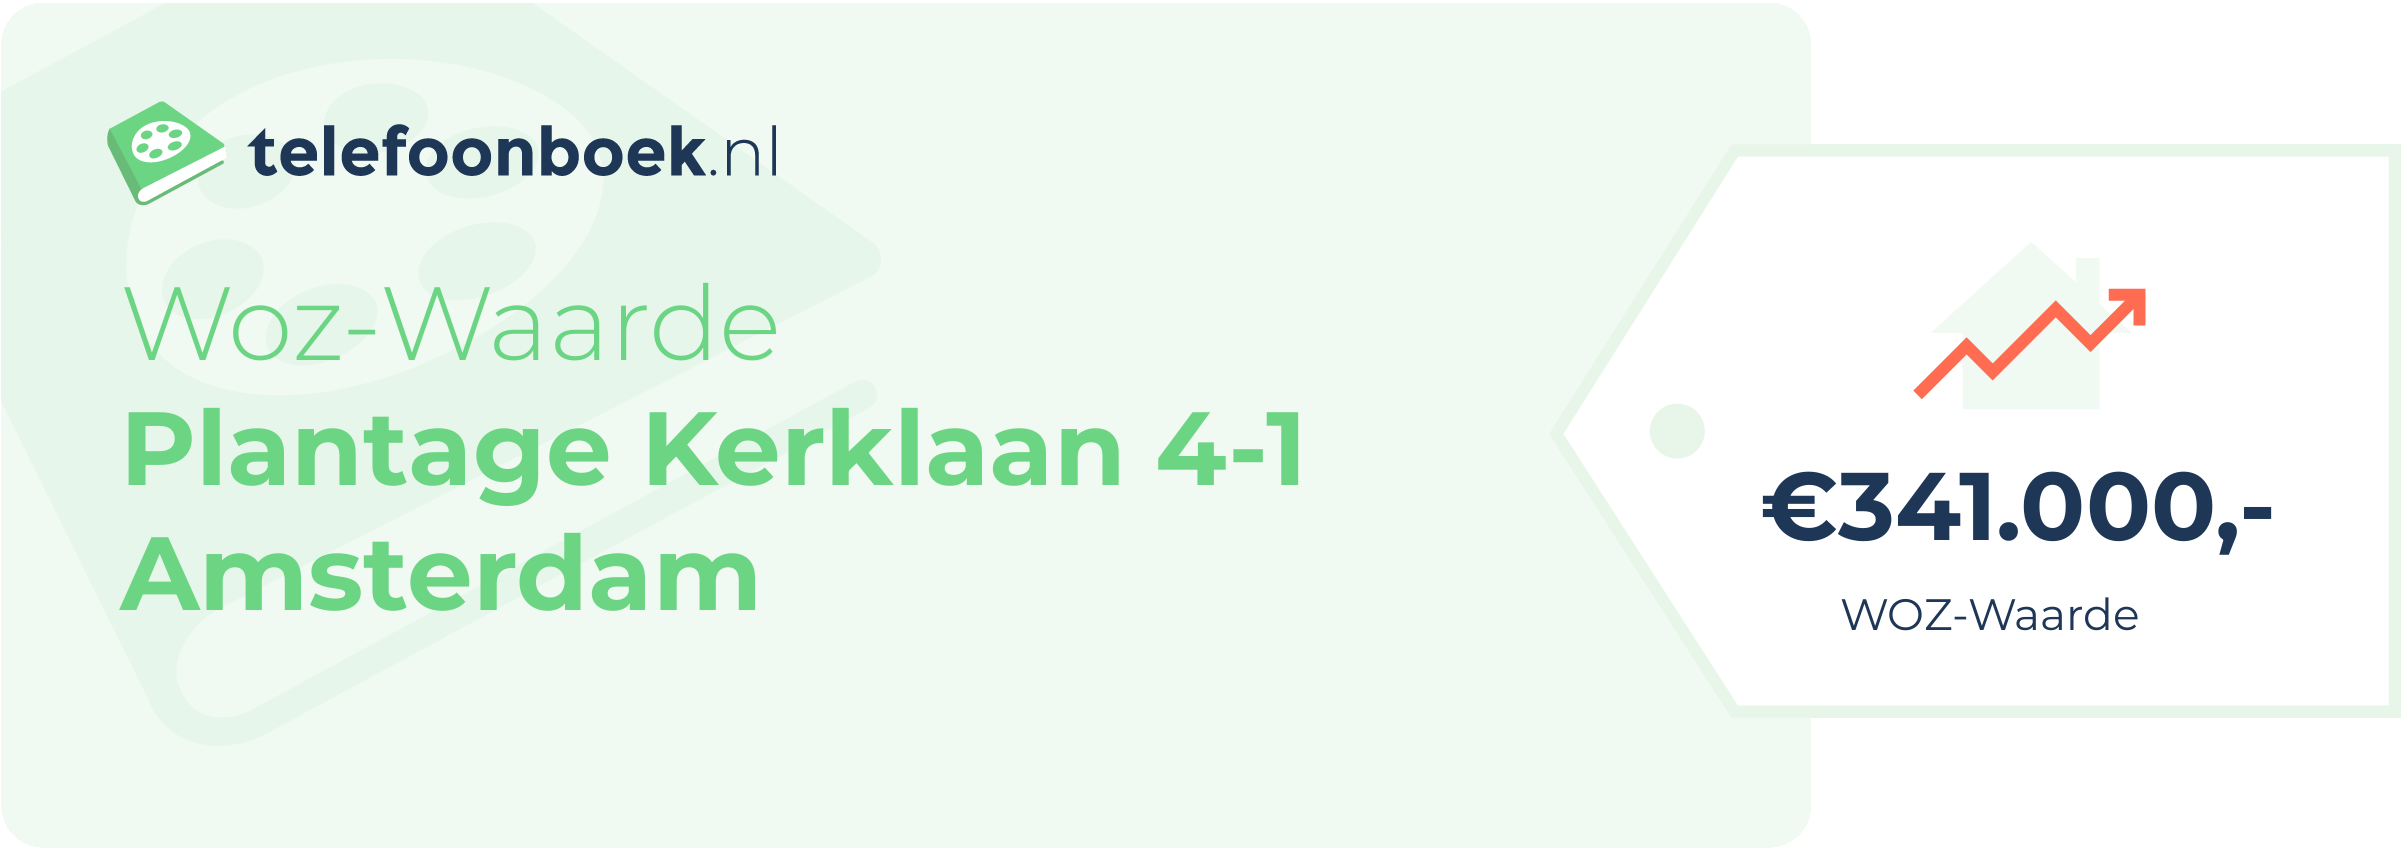 WOZ-waarde Plantage Kerklaan 4-1 Amsterdam